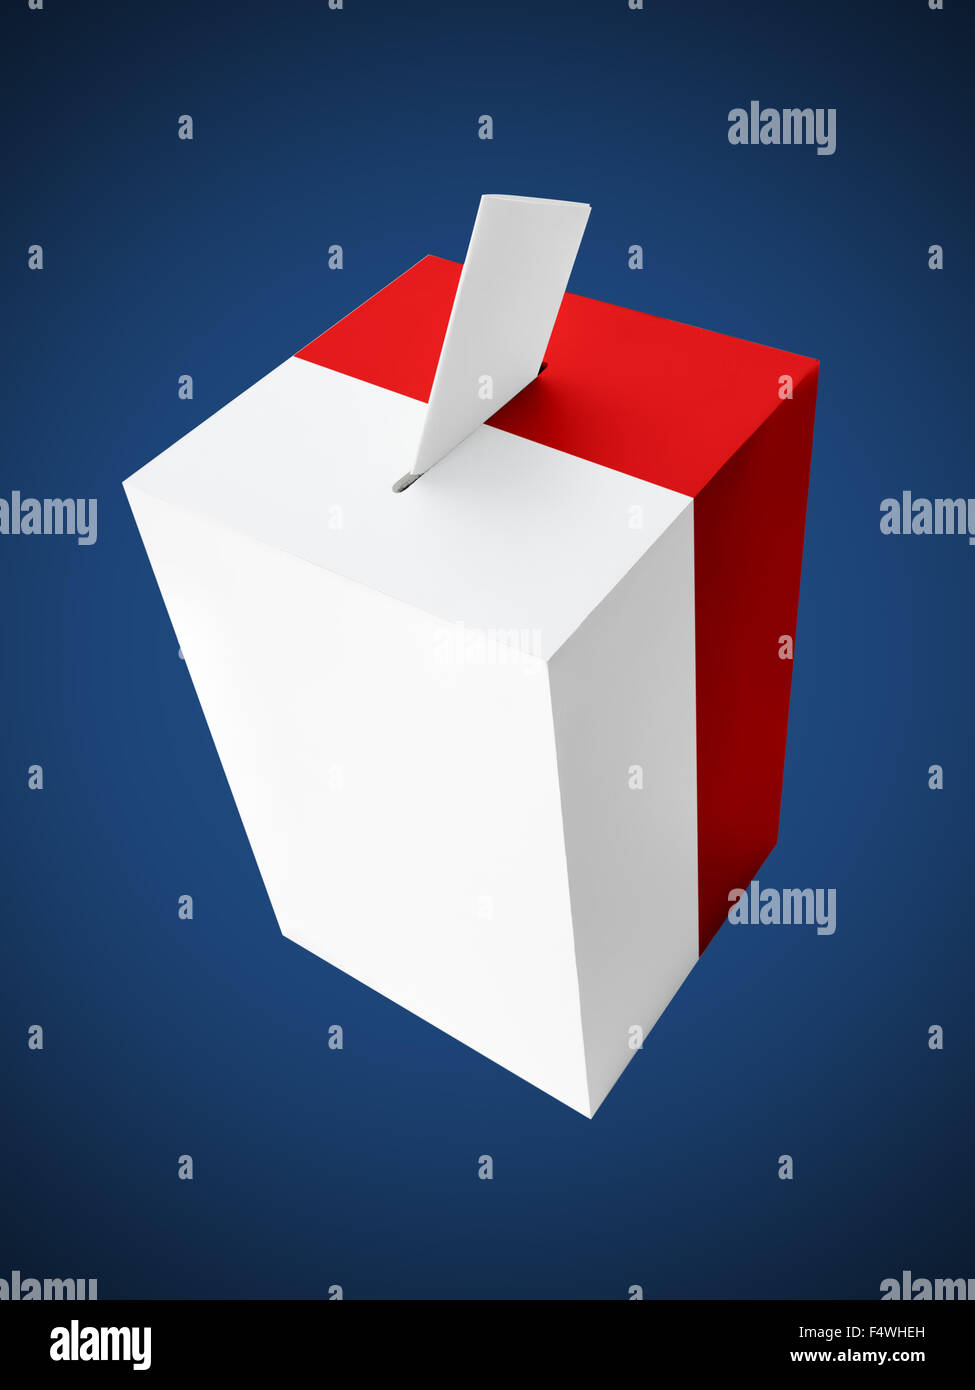 Rouge et blanc polonais urne avec carte de vote sur fond bleu foncé Banque D'Images